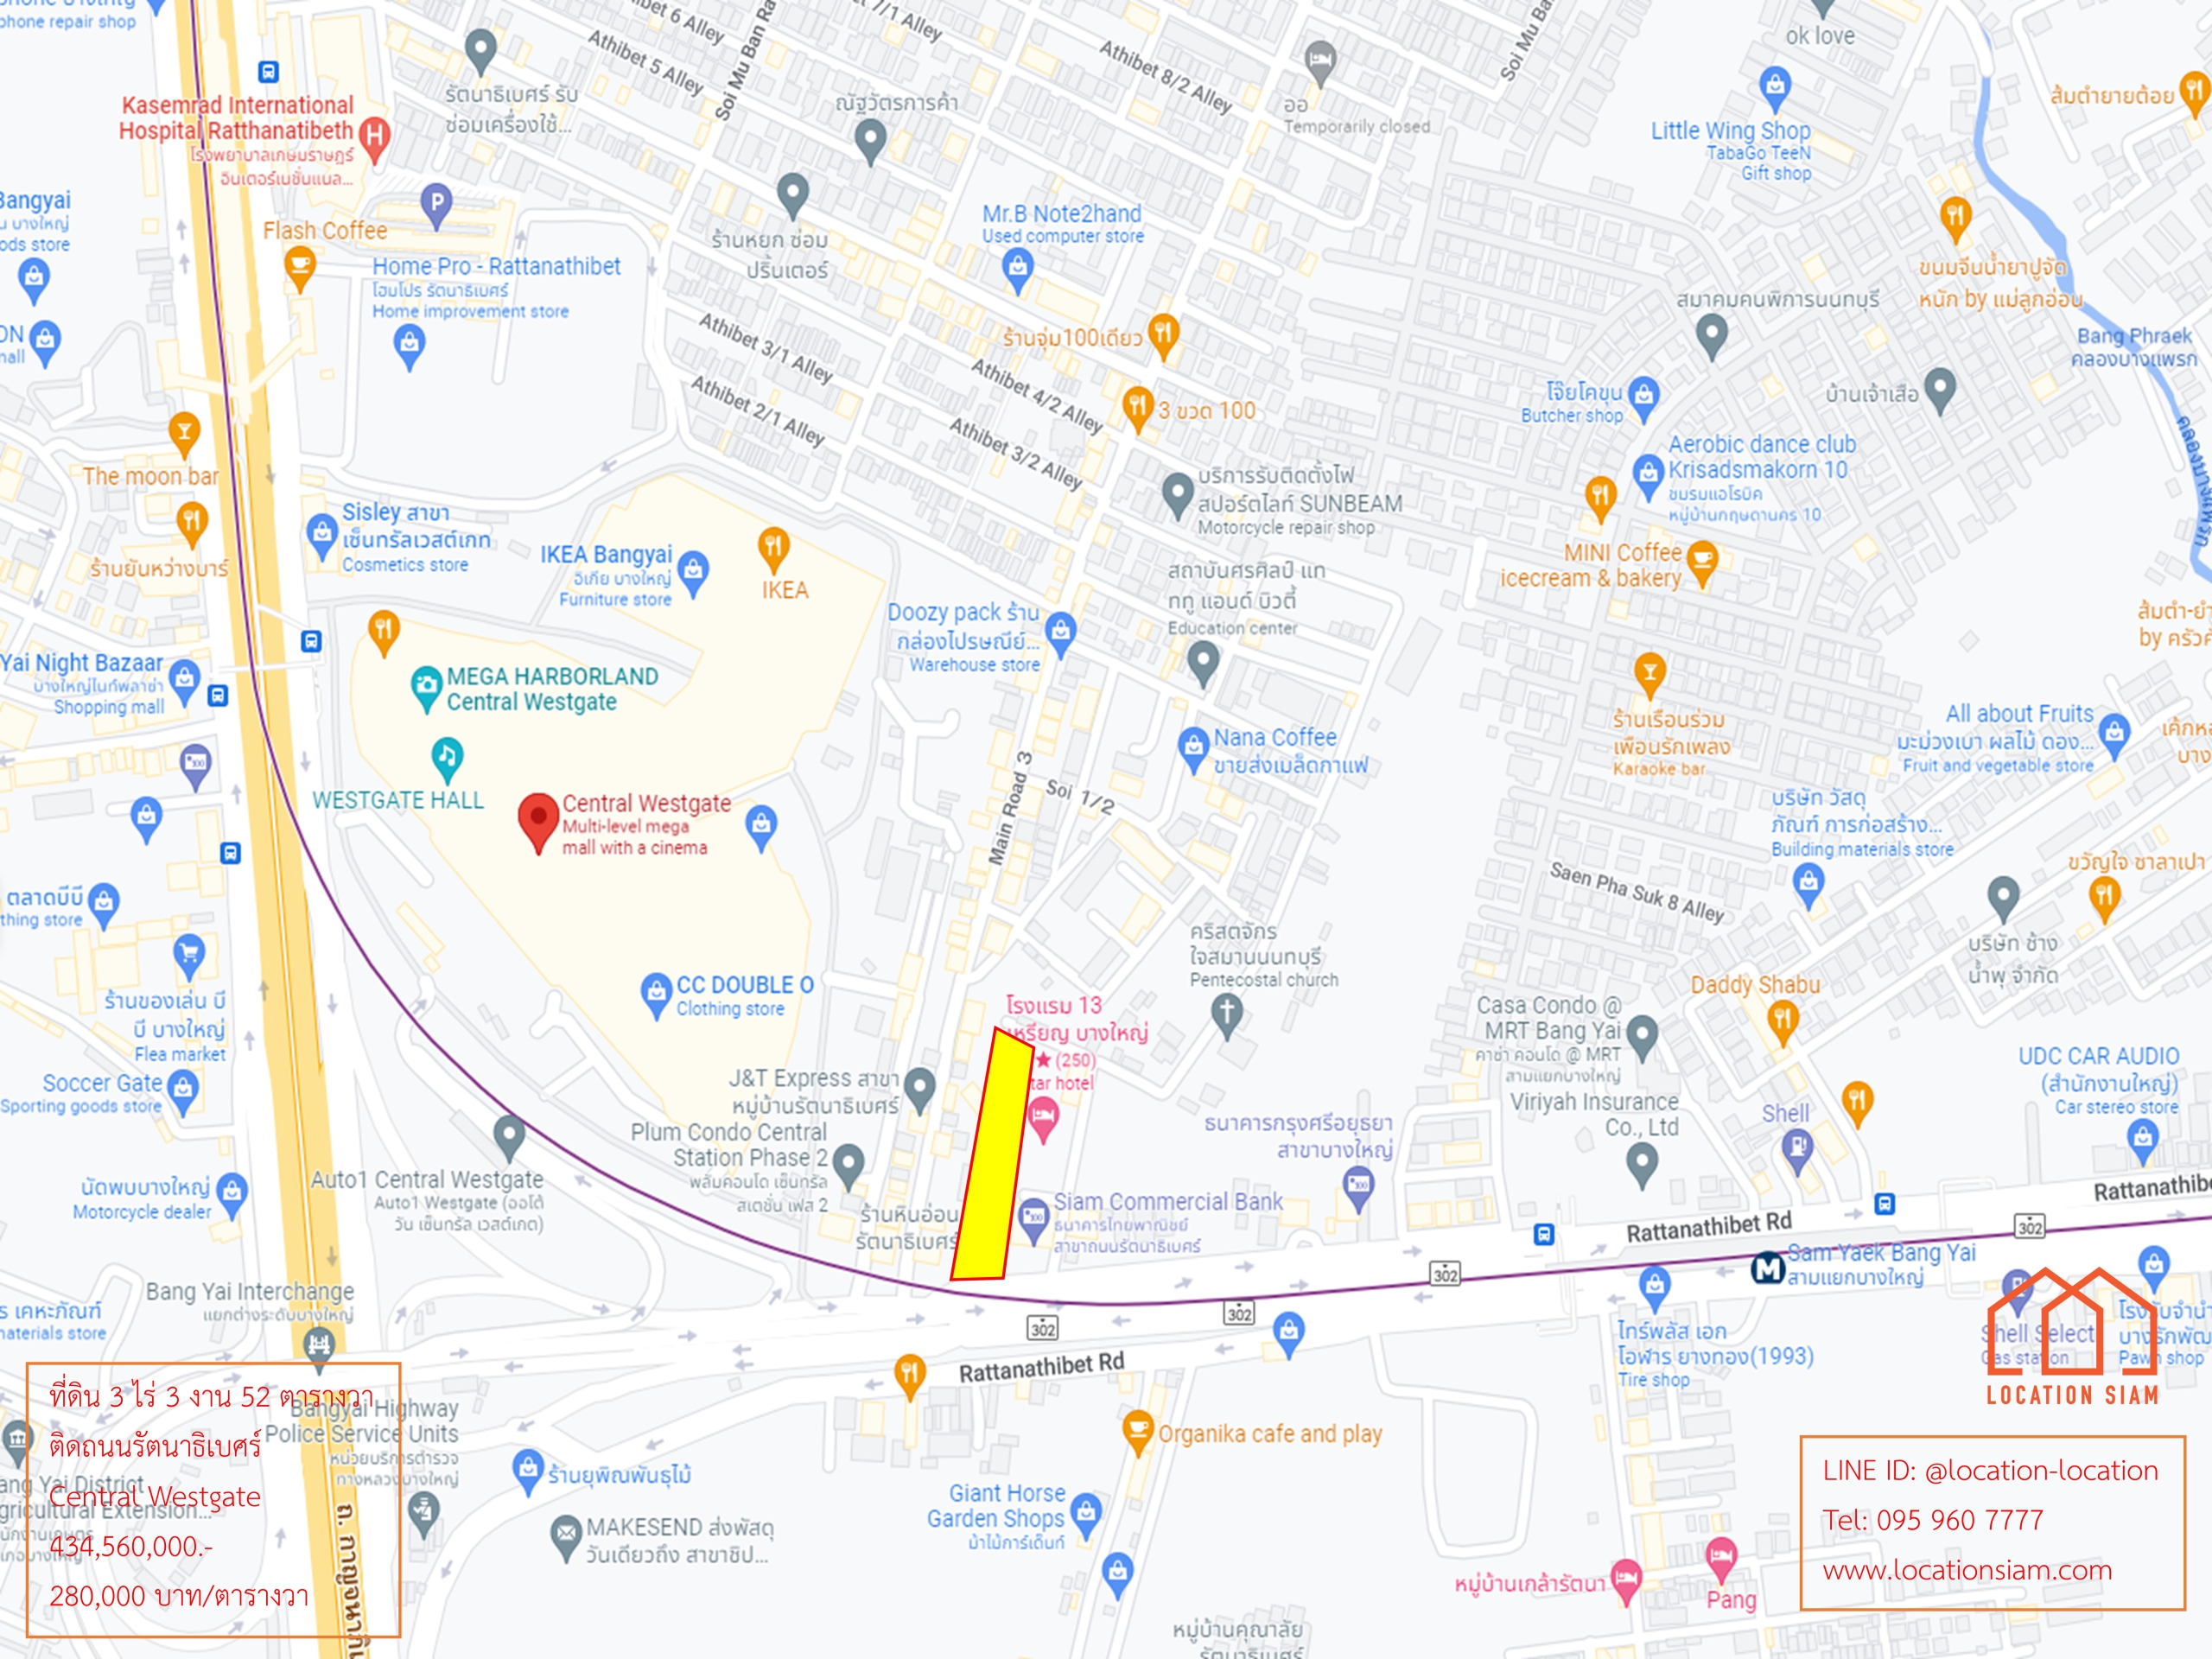 [24 กรกฎาคม 2565] ที่ดิน 3 ไร่ 3 งาน 52 ตารางวา ติดถนนใหญ่รัตนาธิเบศร์, 50 เมตร เดินไป Central Westgate, กว้าง 43 เมตร ลึก 155 เมตร